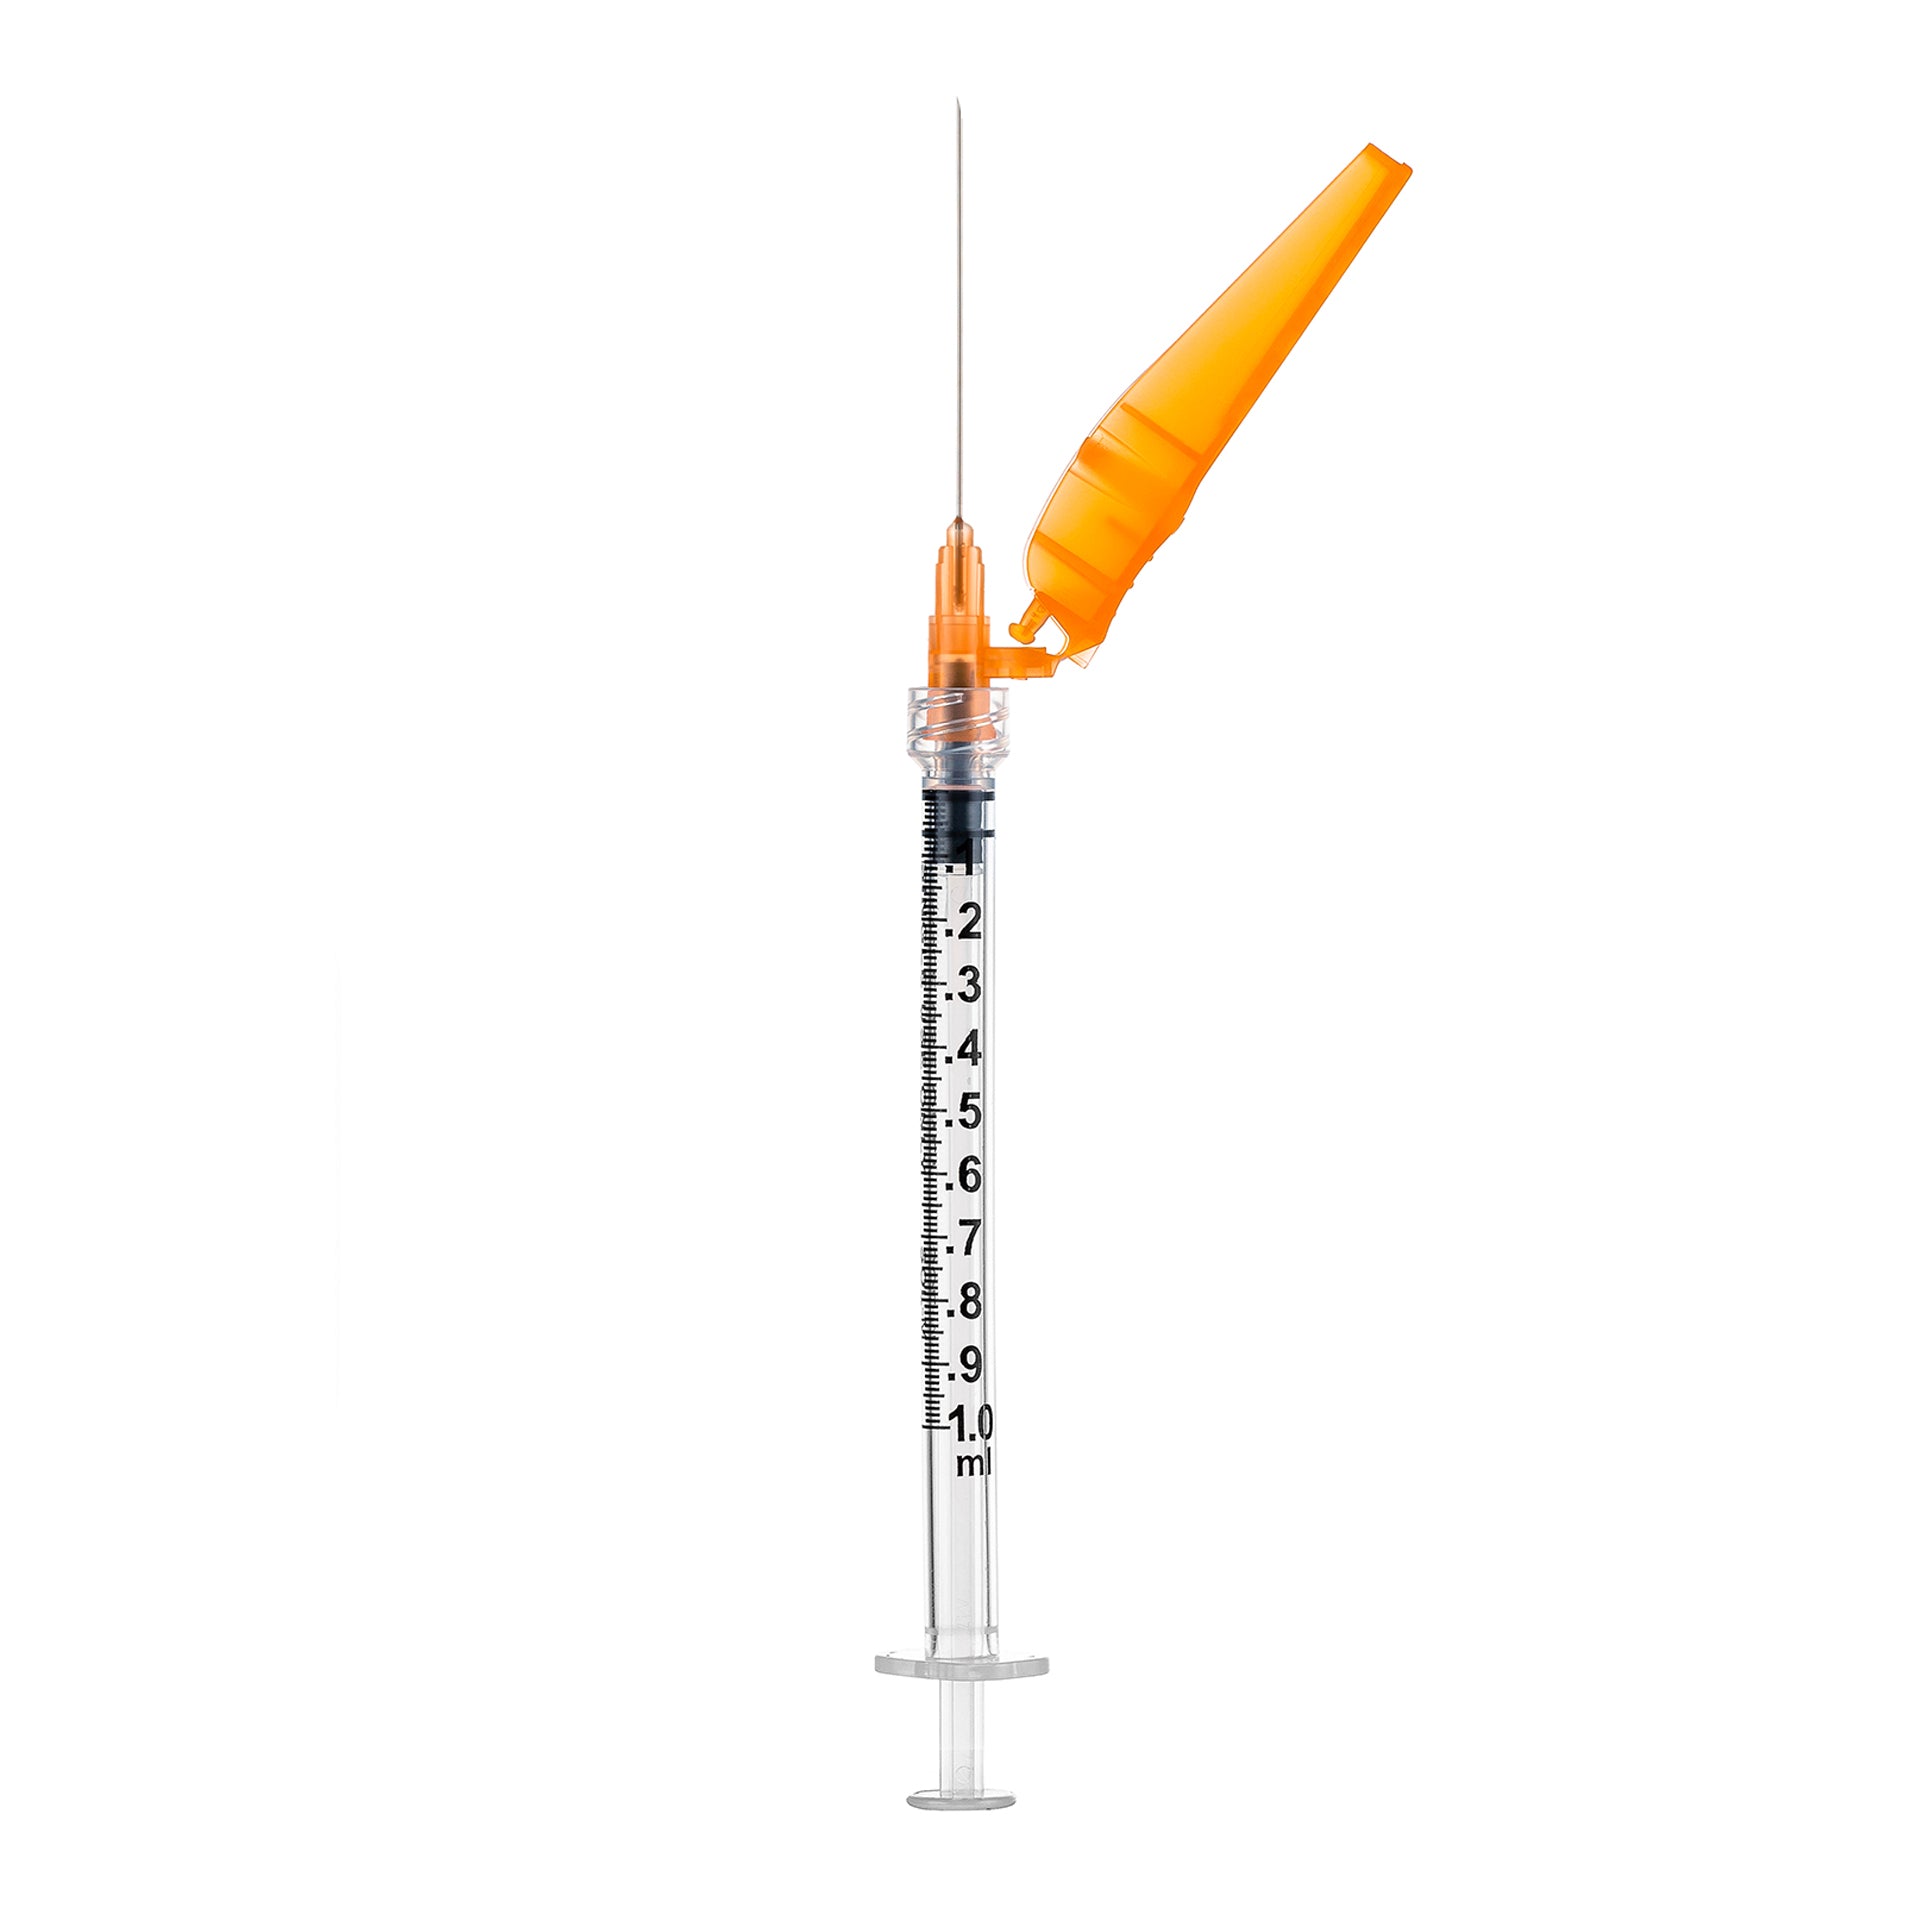 BX/50 - SOL-CARE 1ml Luer Lock Syringe w/Safety Needle 30G*1/2 (needle aside)